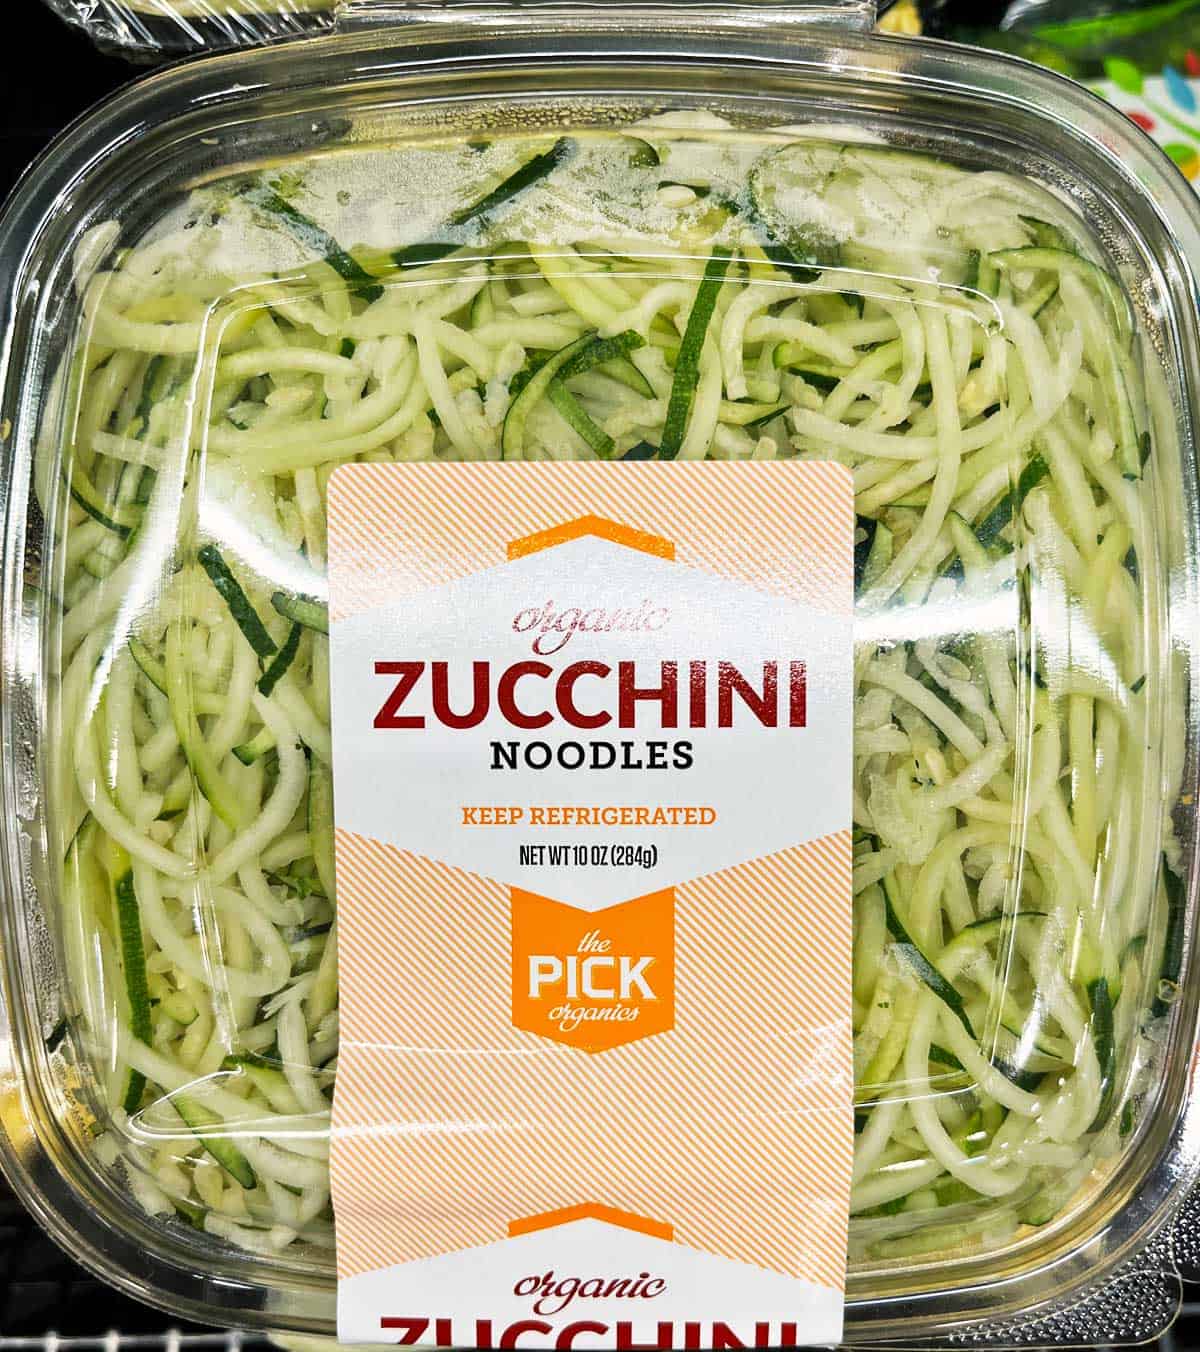 Packaged fresh zucchini spirals.